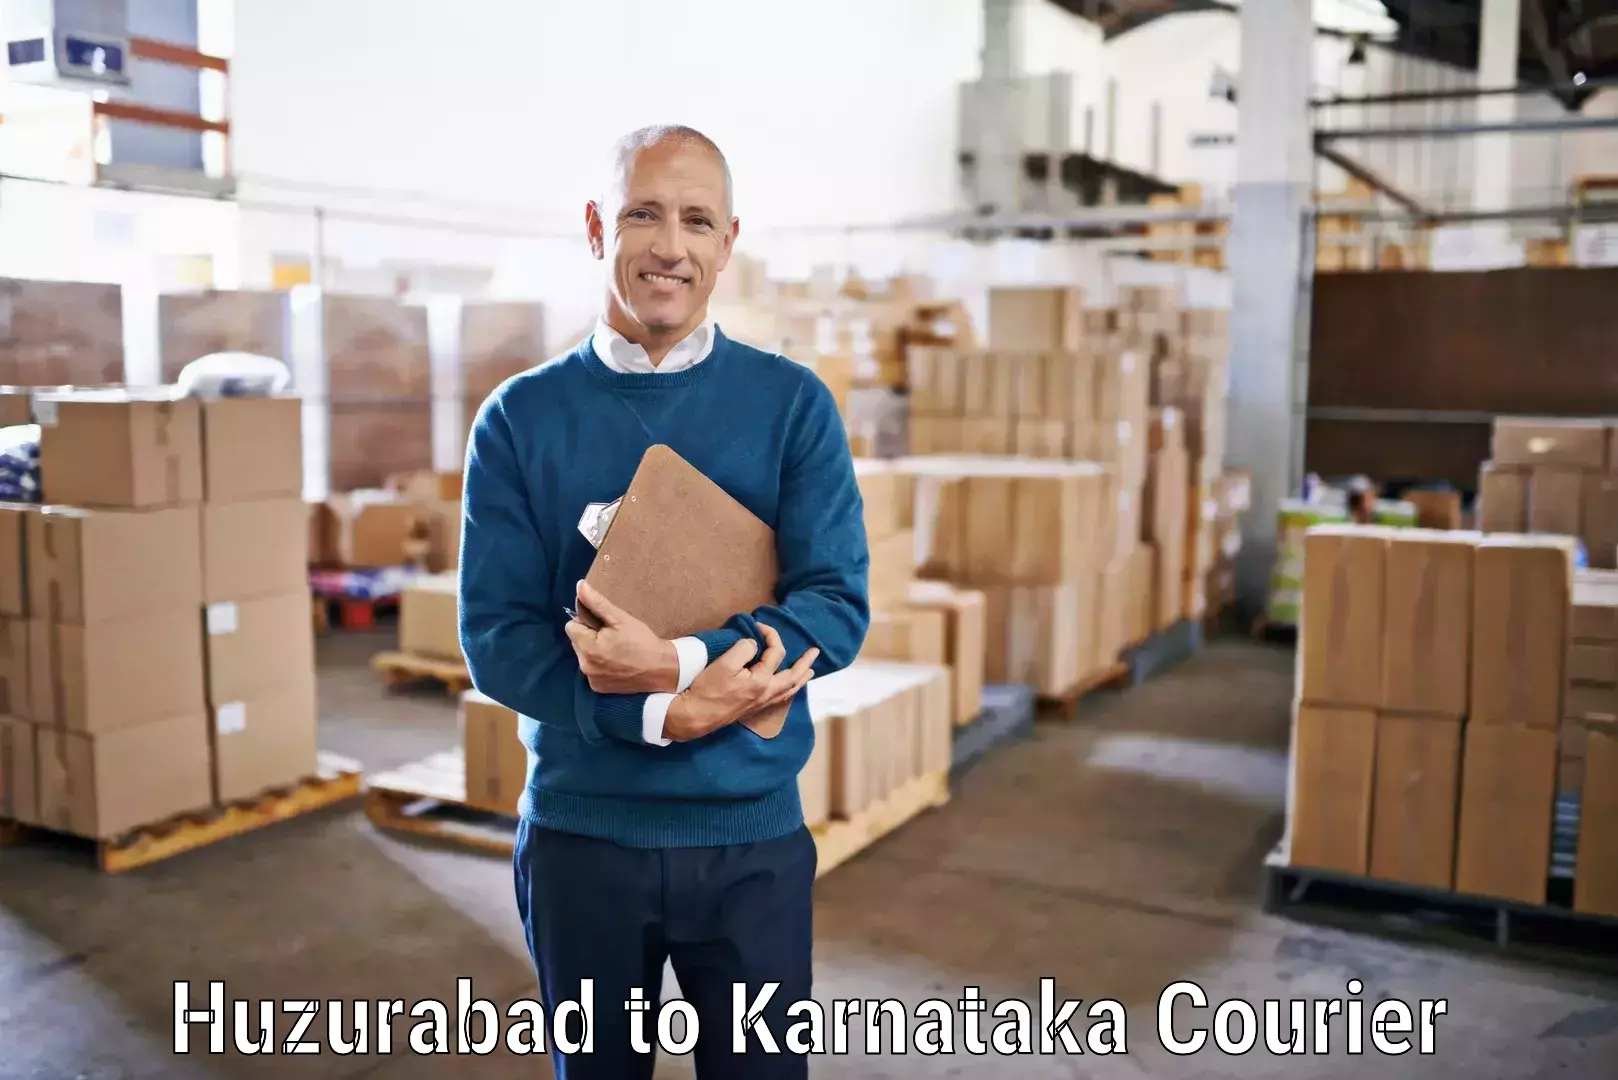 Cost-effective courier solutions Huzurabad to Bijapur